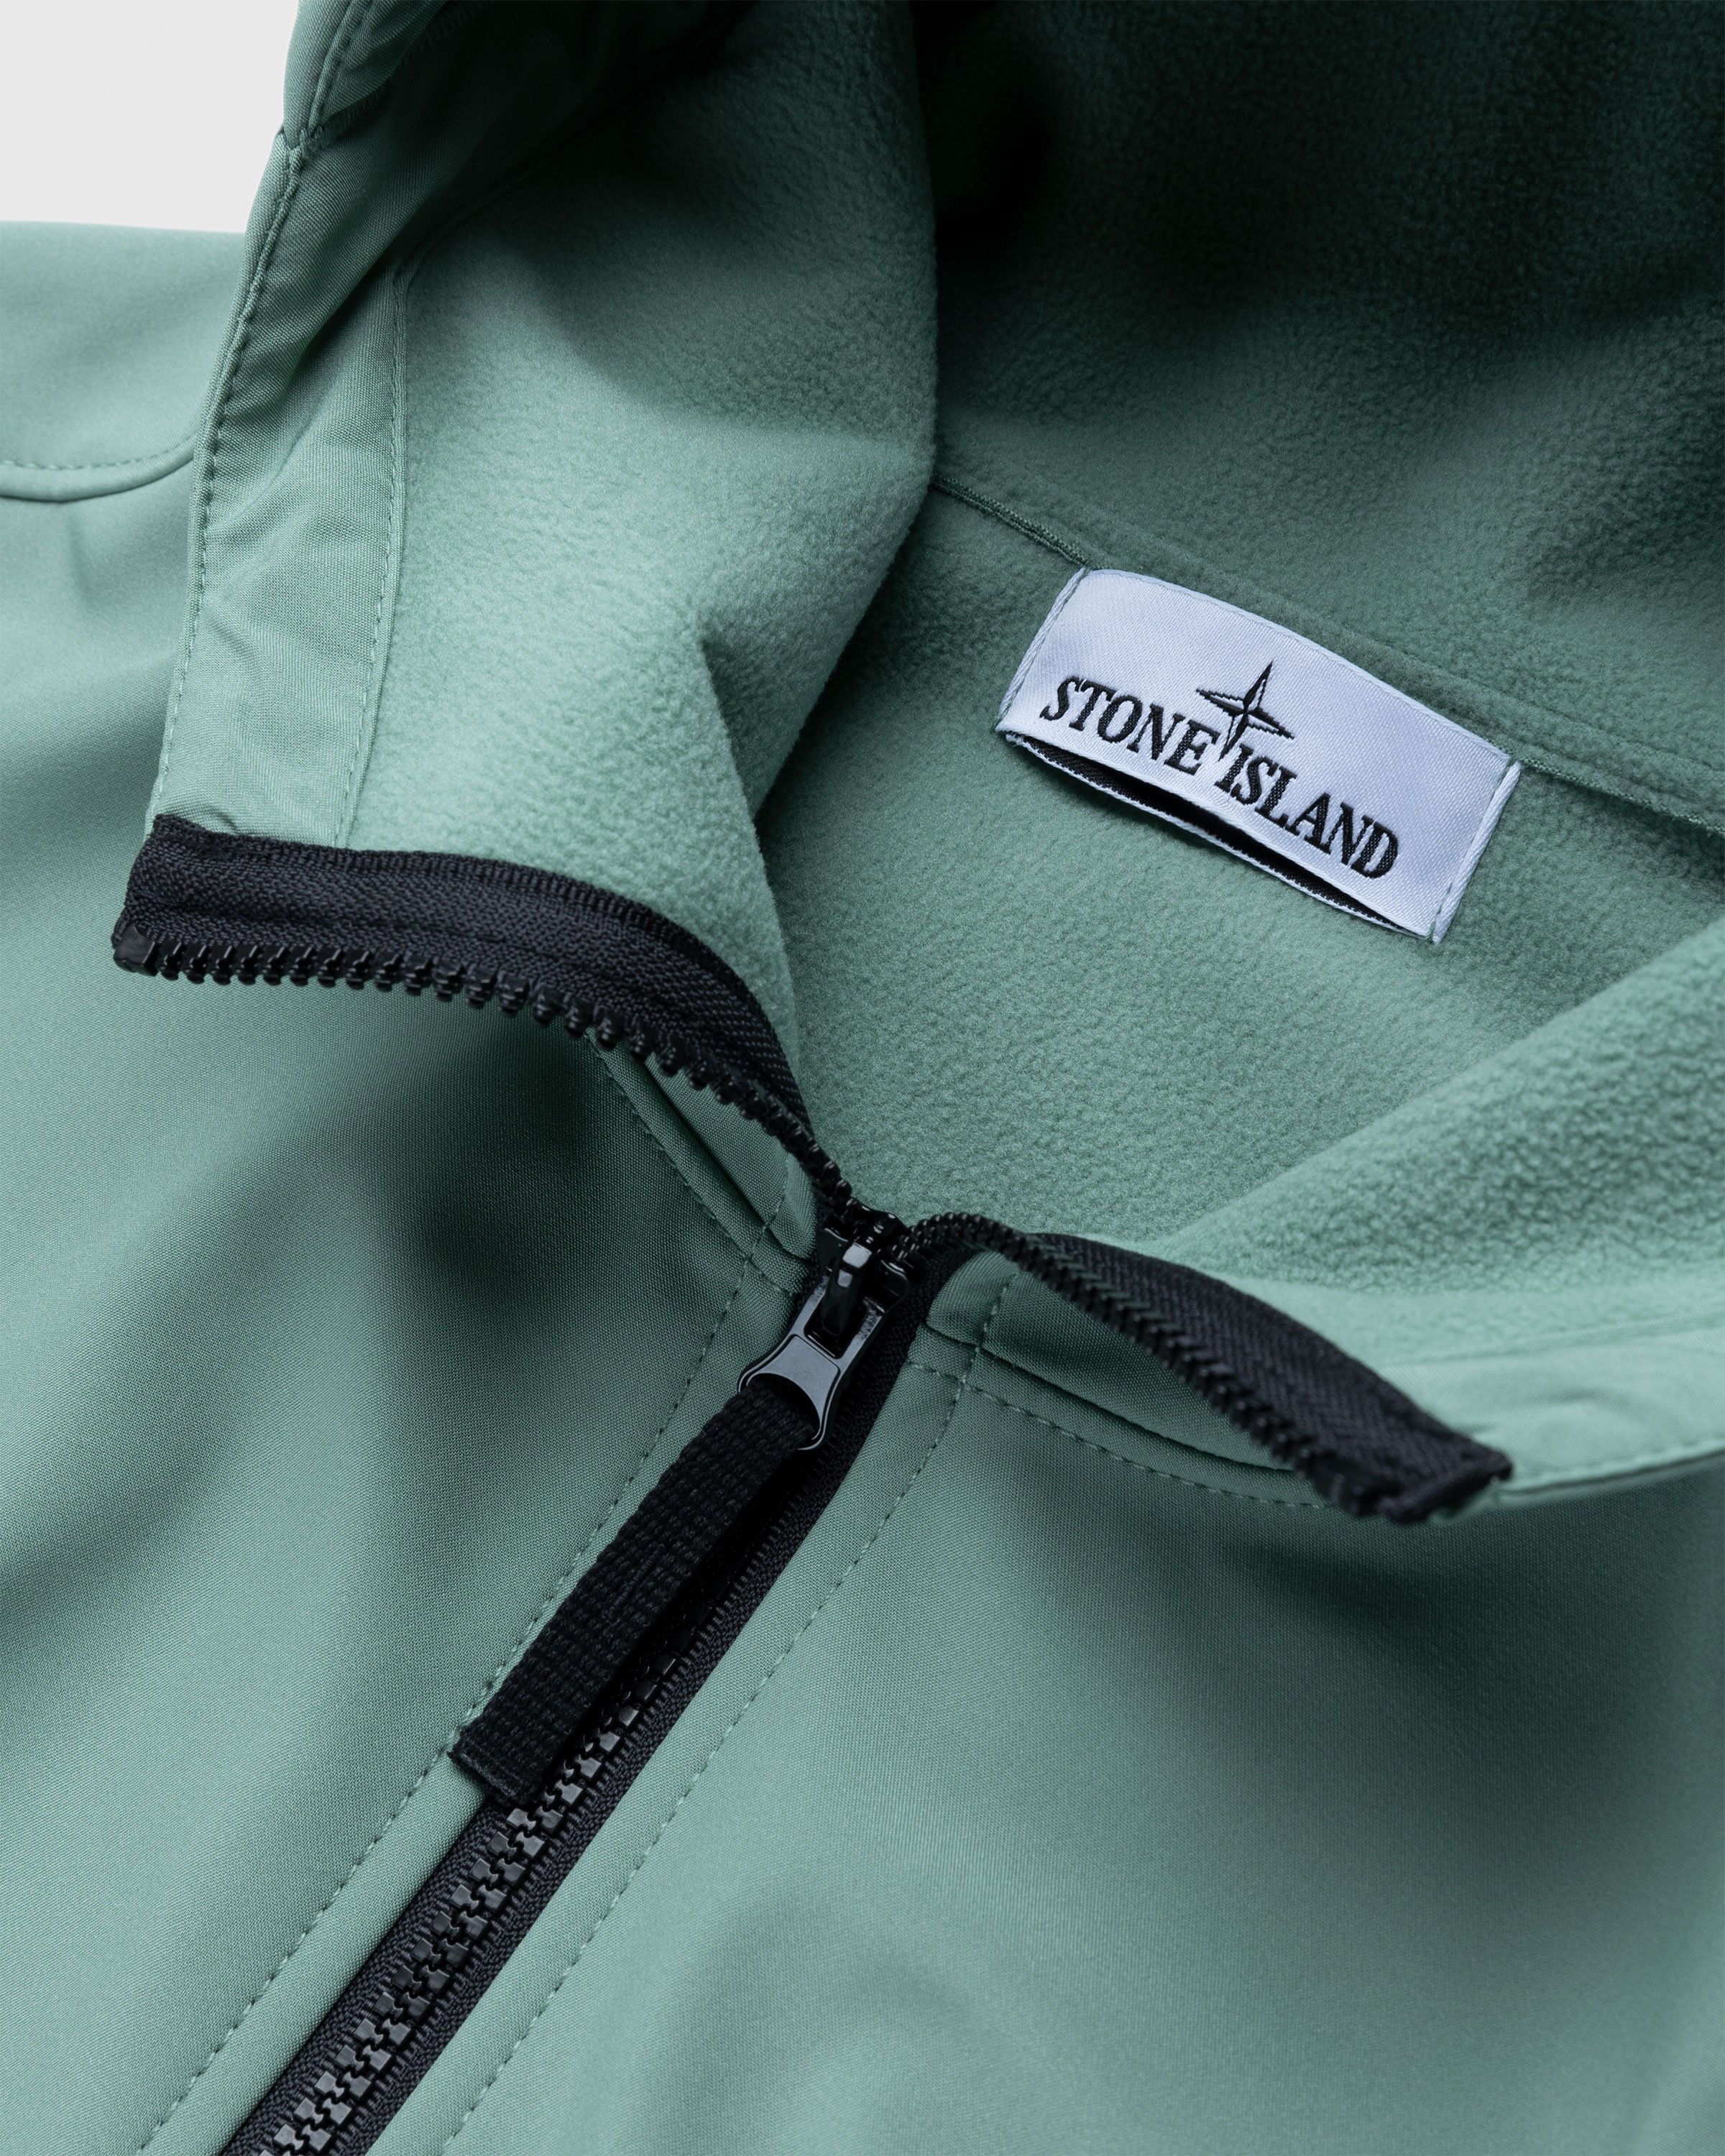 Stone Island - Soft Shell Hooded Jacket Sage - Clothing - Green - Image 3